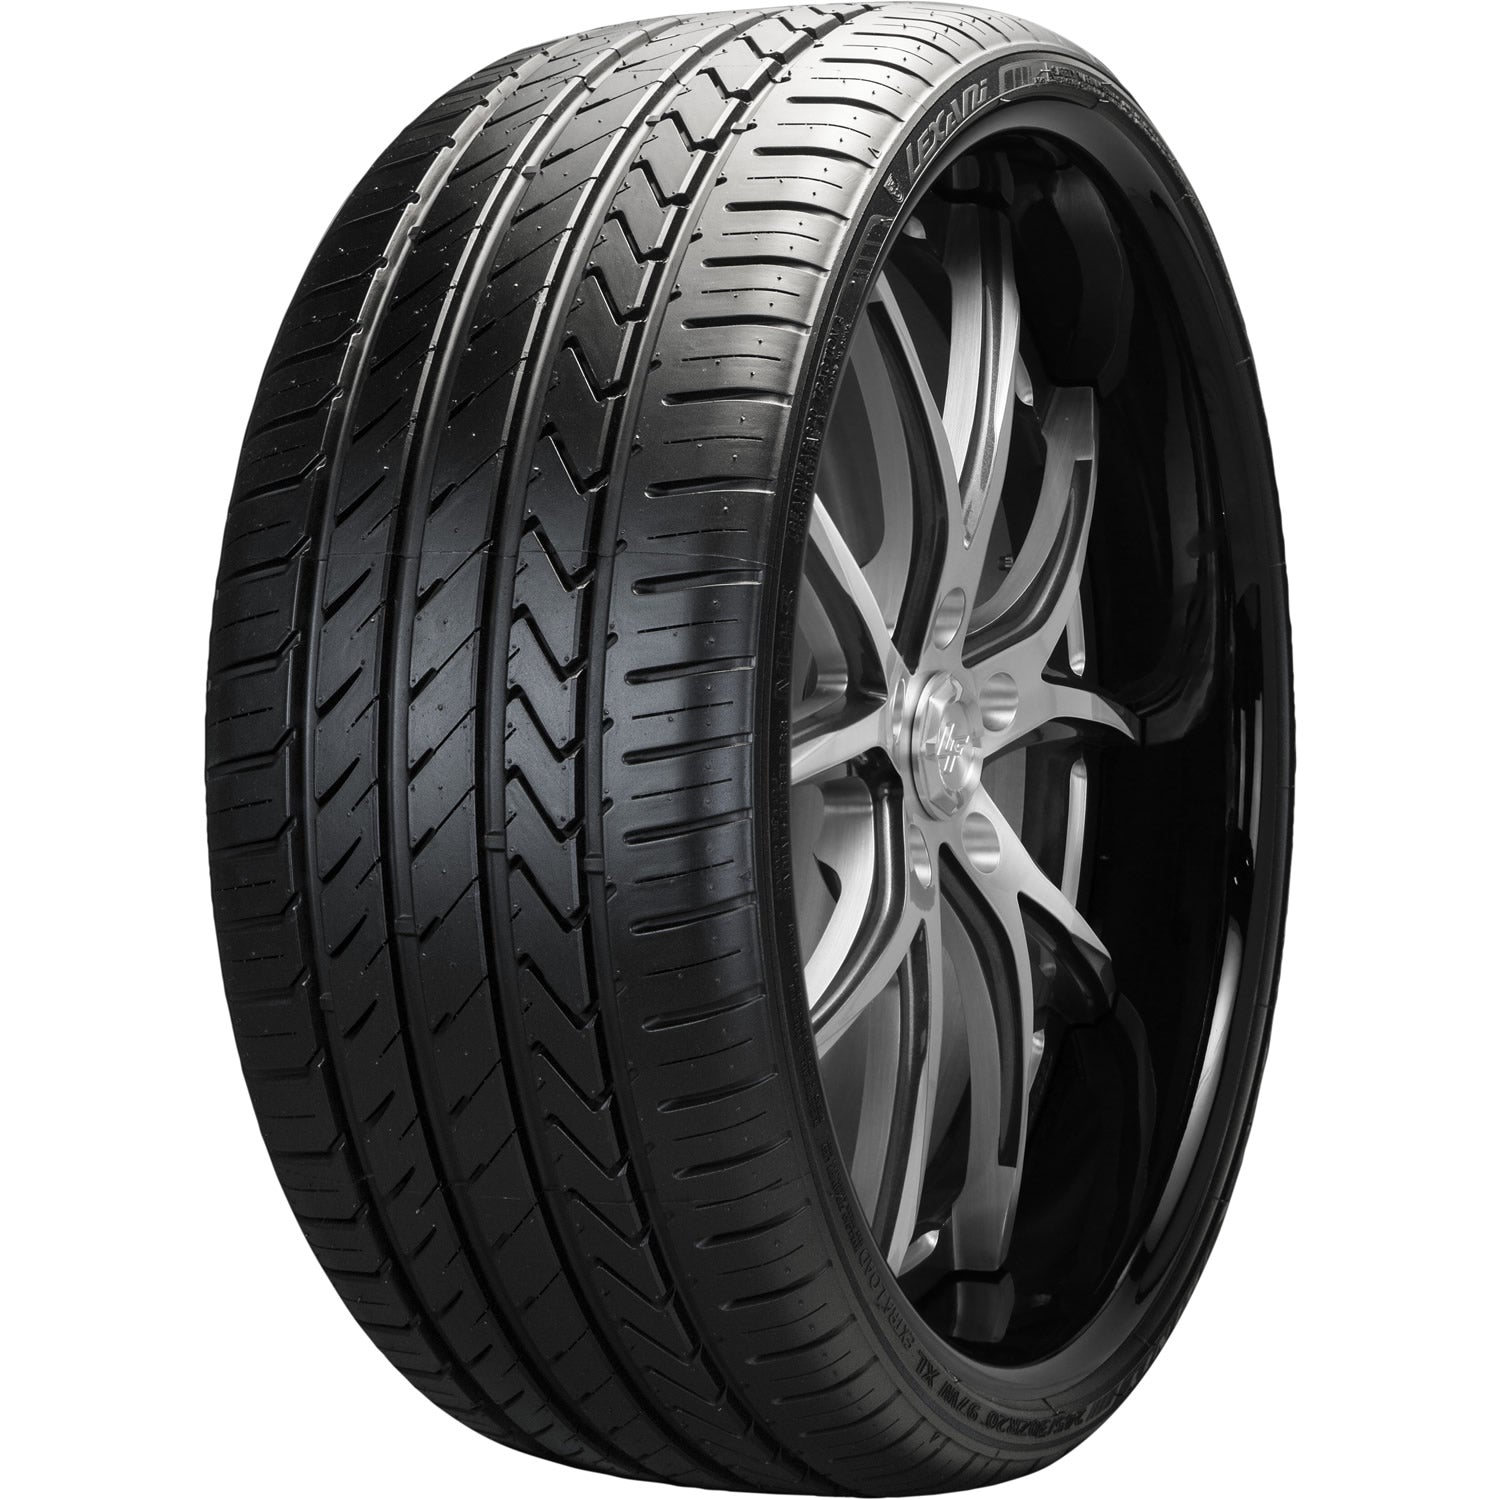 LEXANI LX-TWENTY 275/55R17 (28.9X11.2R 17) Tires